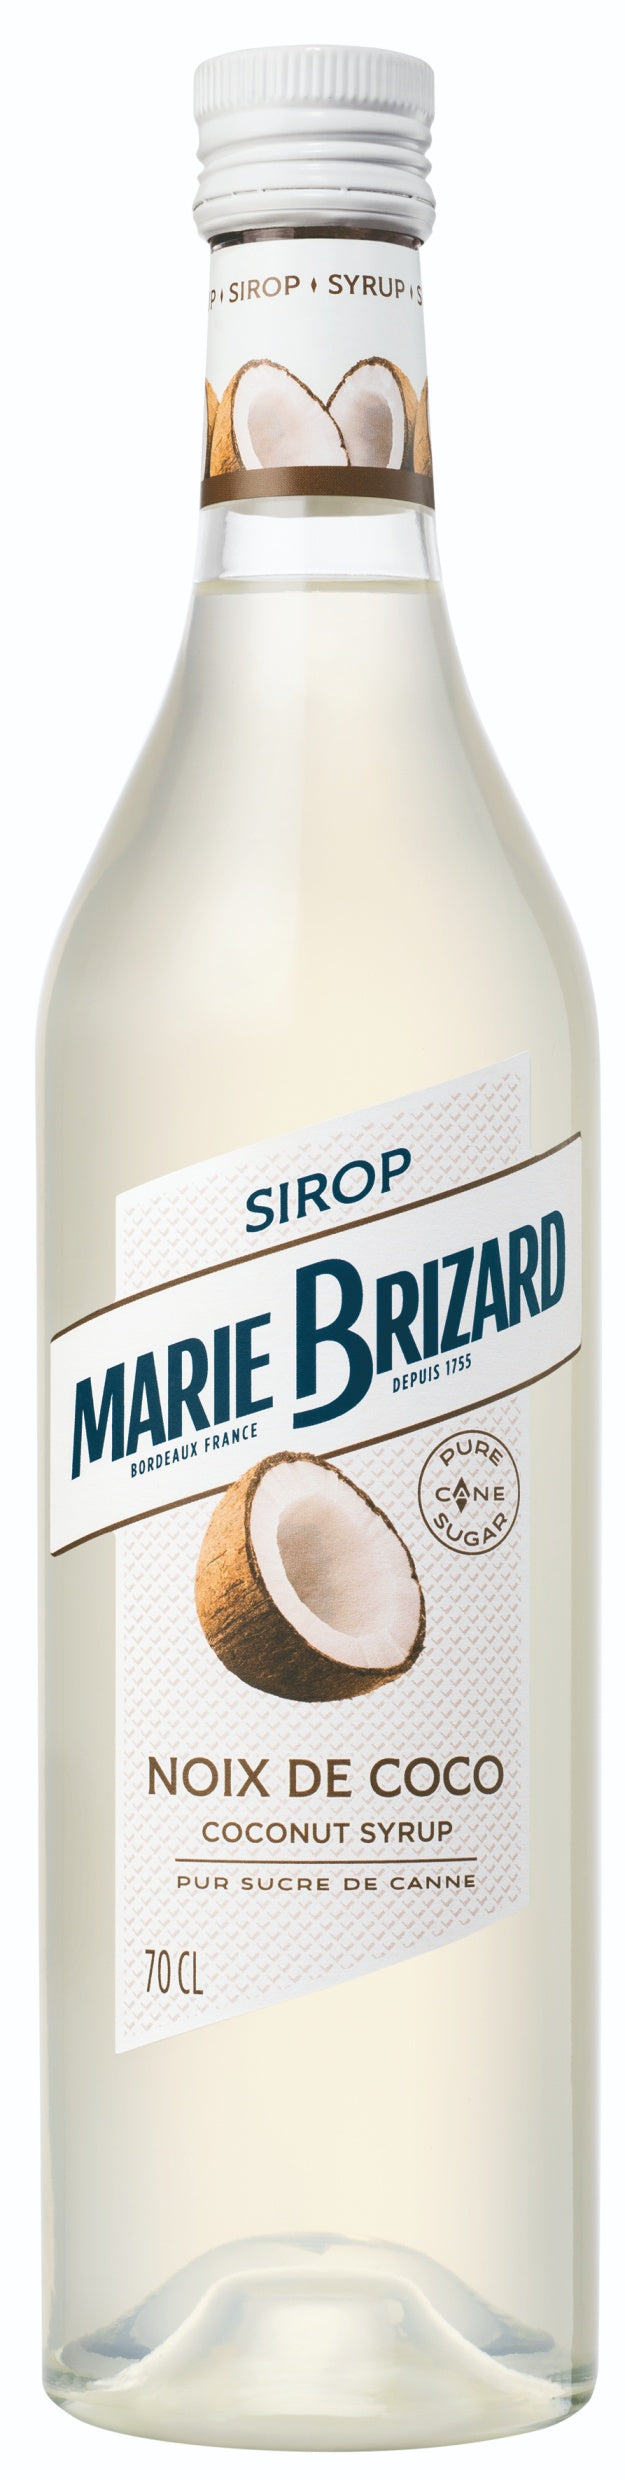 MARIE BRIZARD SIROP NOIX DE COCO 70CL